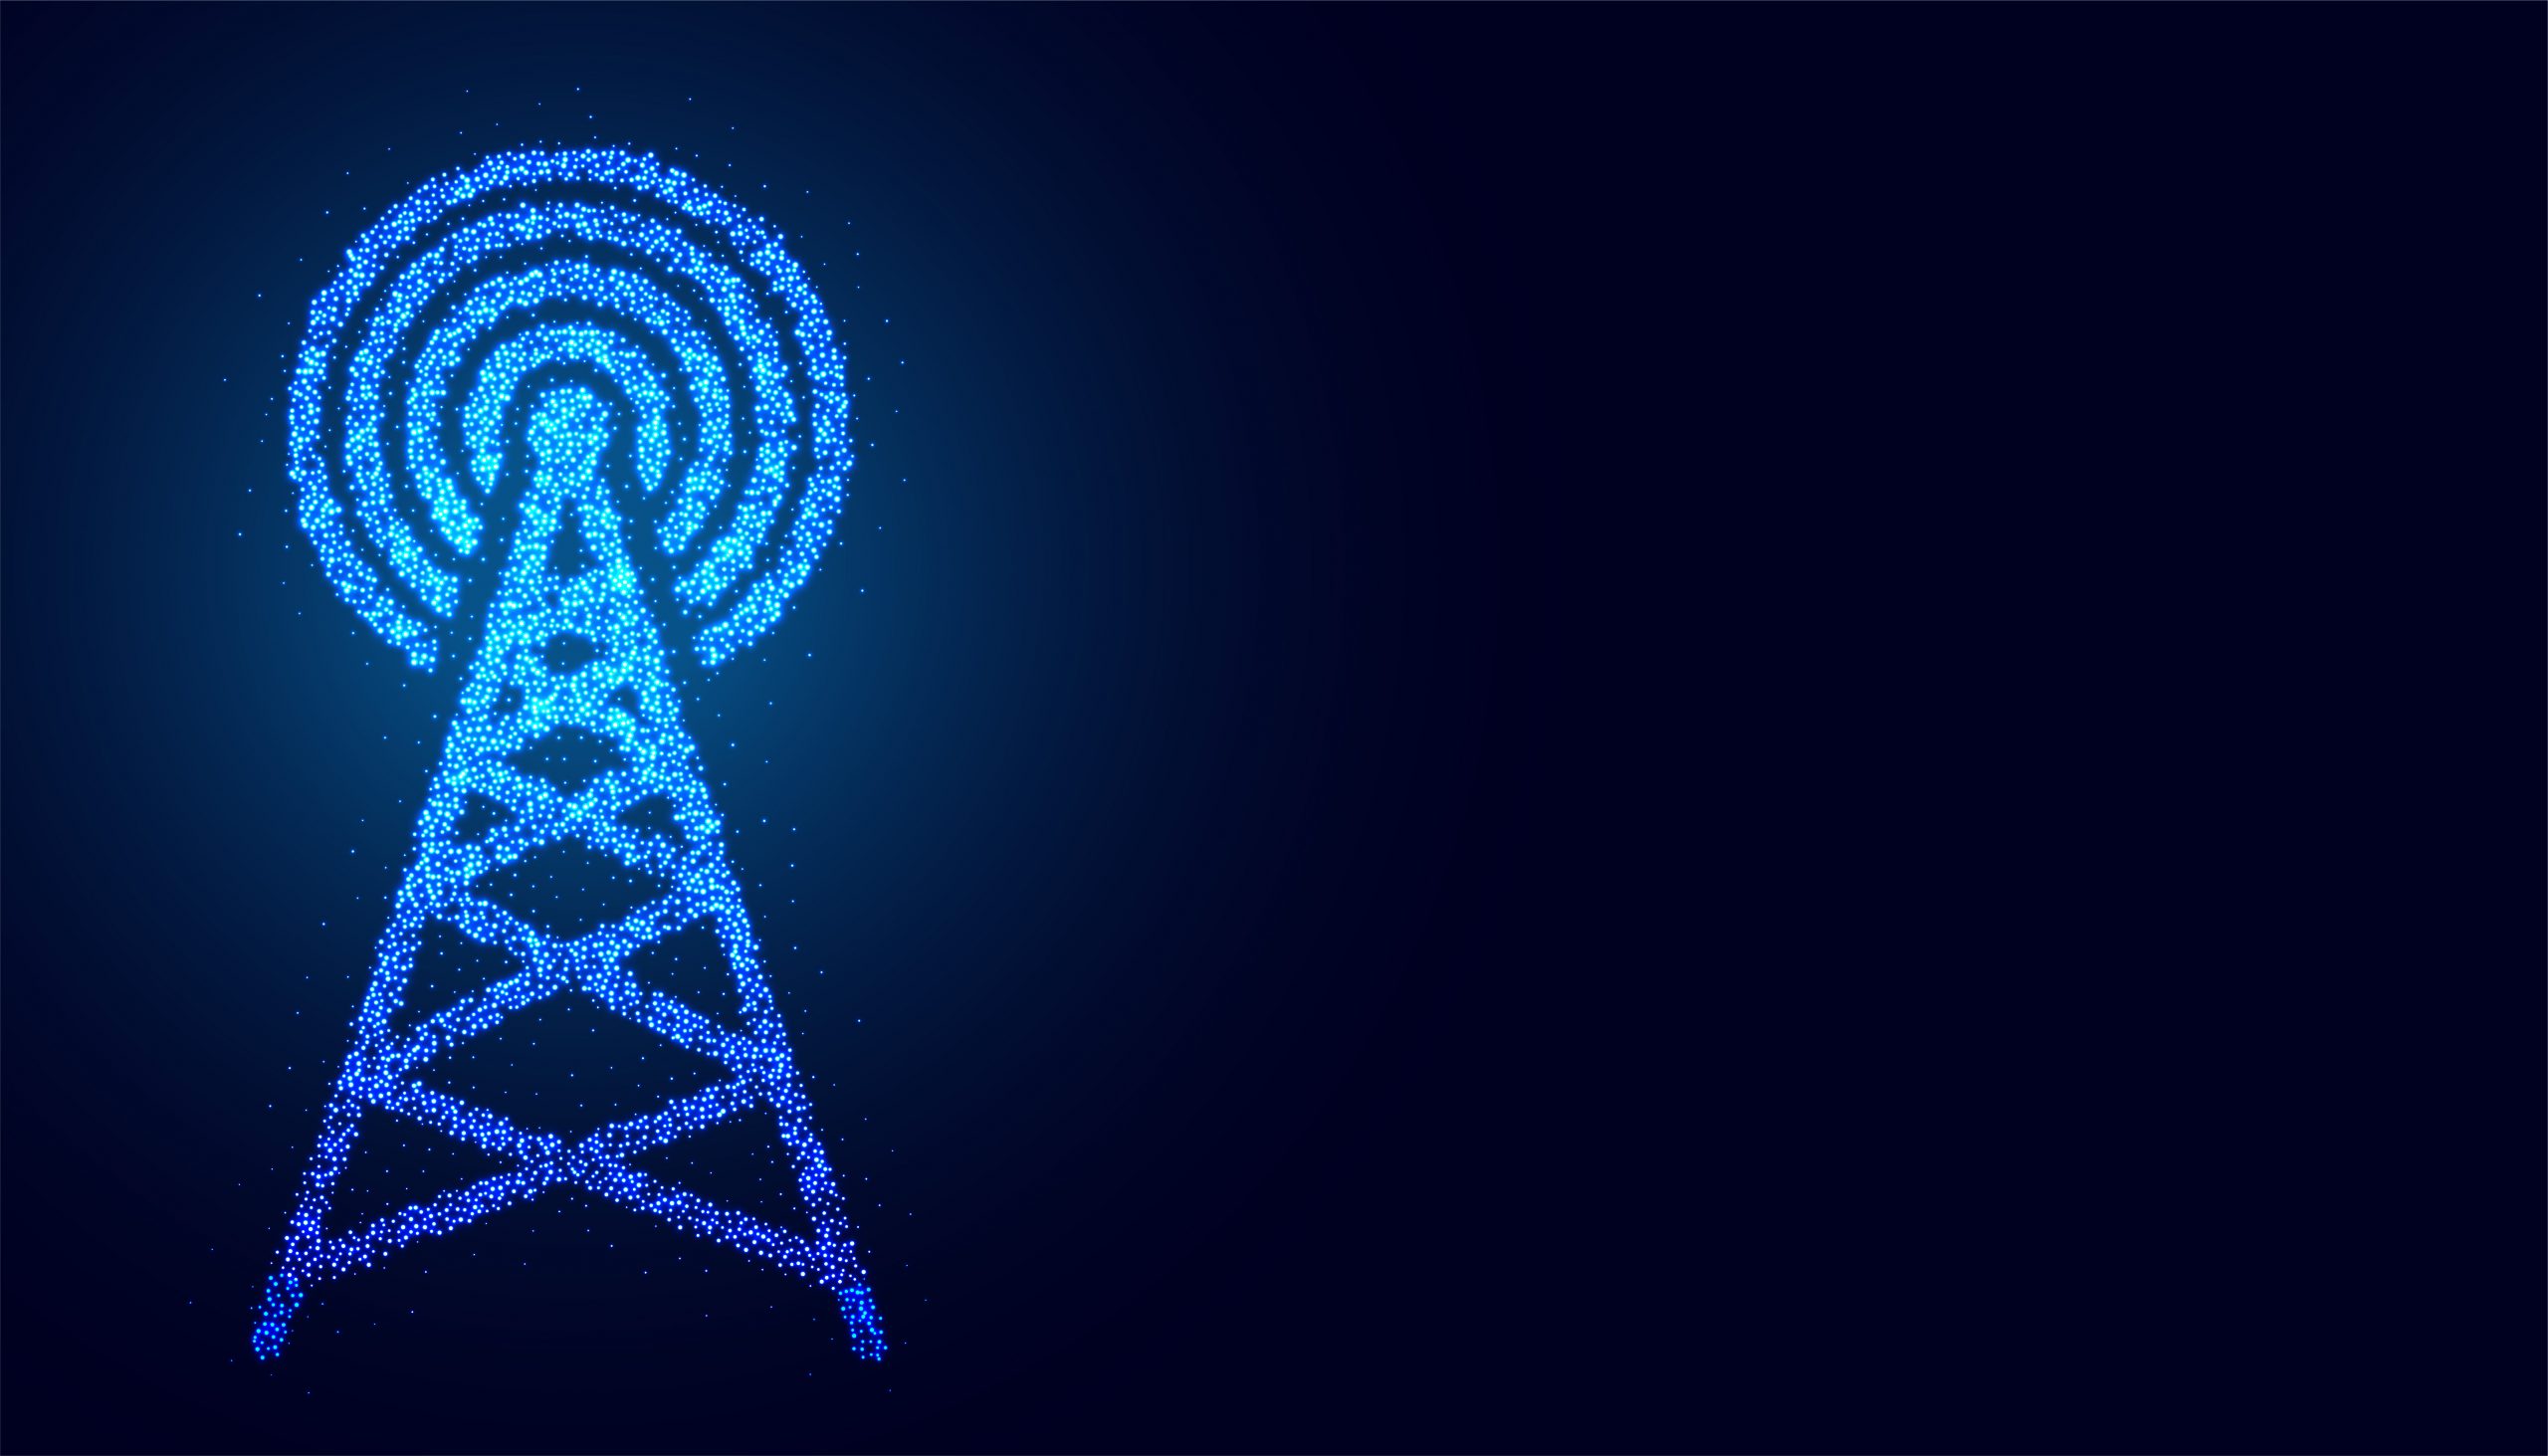 16 февраля тренды цифровизации телеком-отрасли и меры господдержки обсудят на онлайн-форуме Forum.Digital Telecom 2023